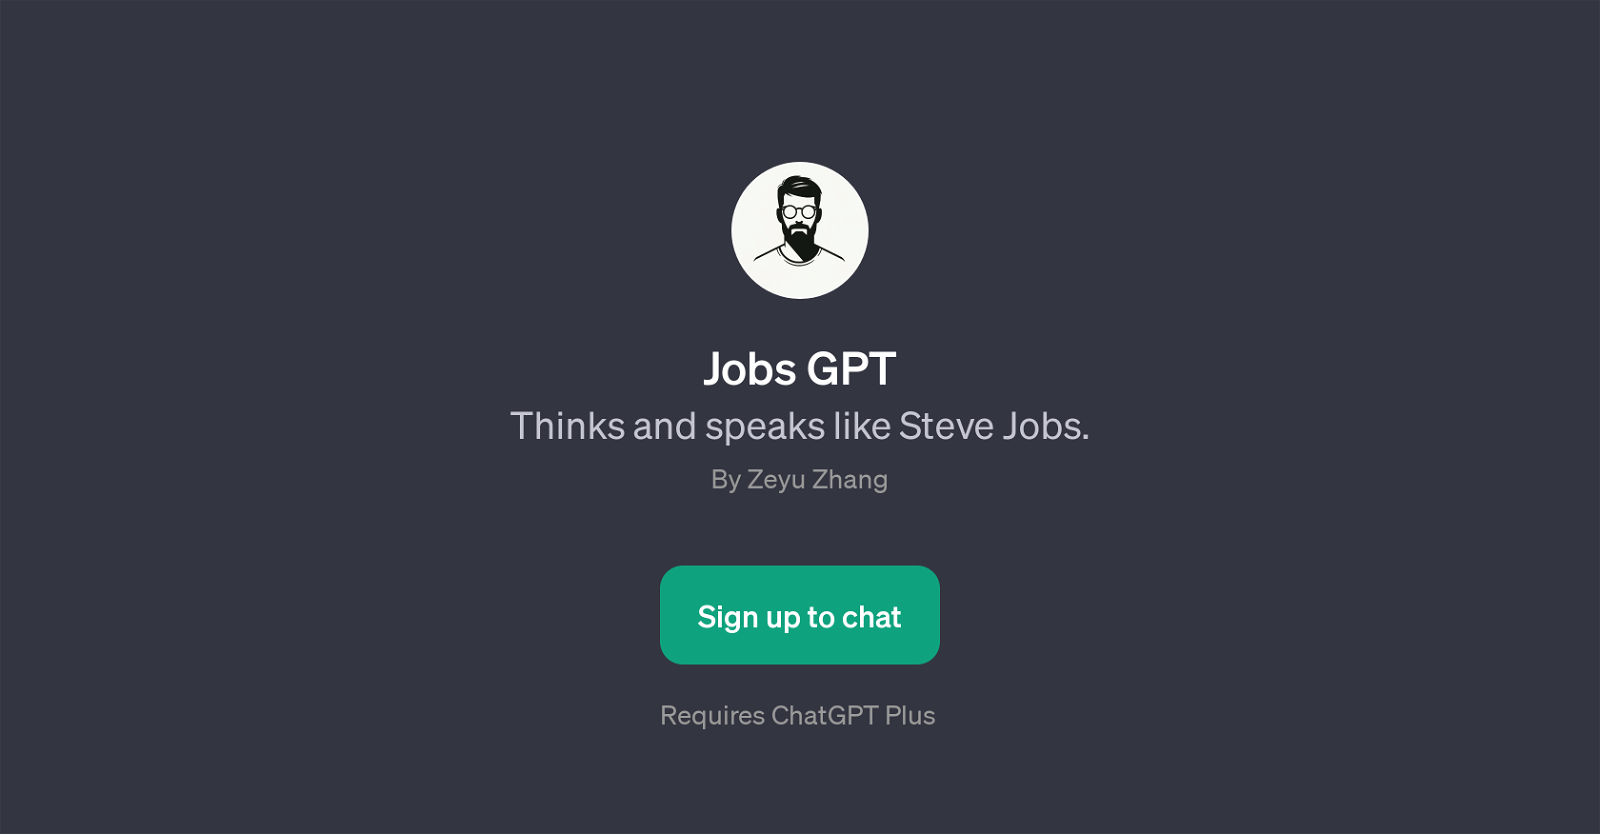 Jobs GPT website